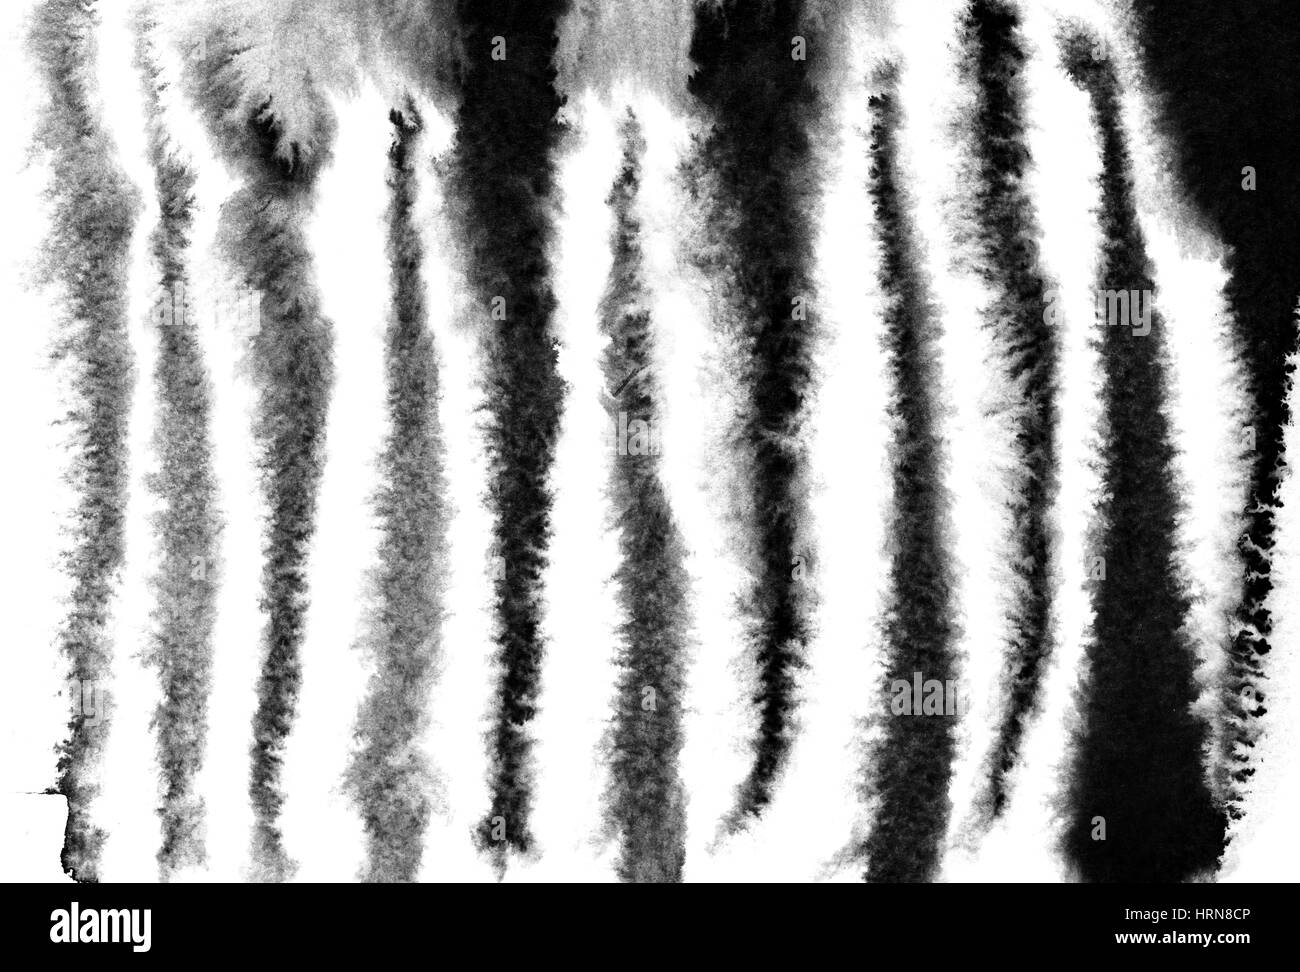 Zebra stripes pattern - Aquarelle illustration raster Banque D'Images